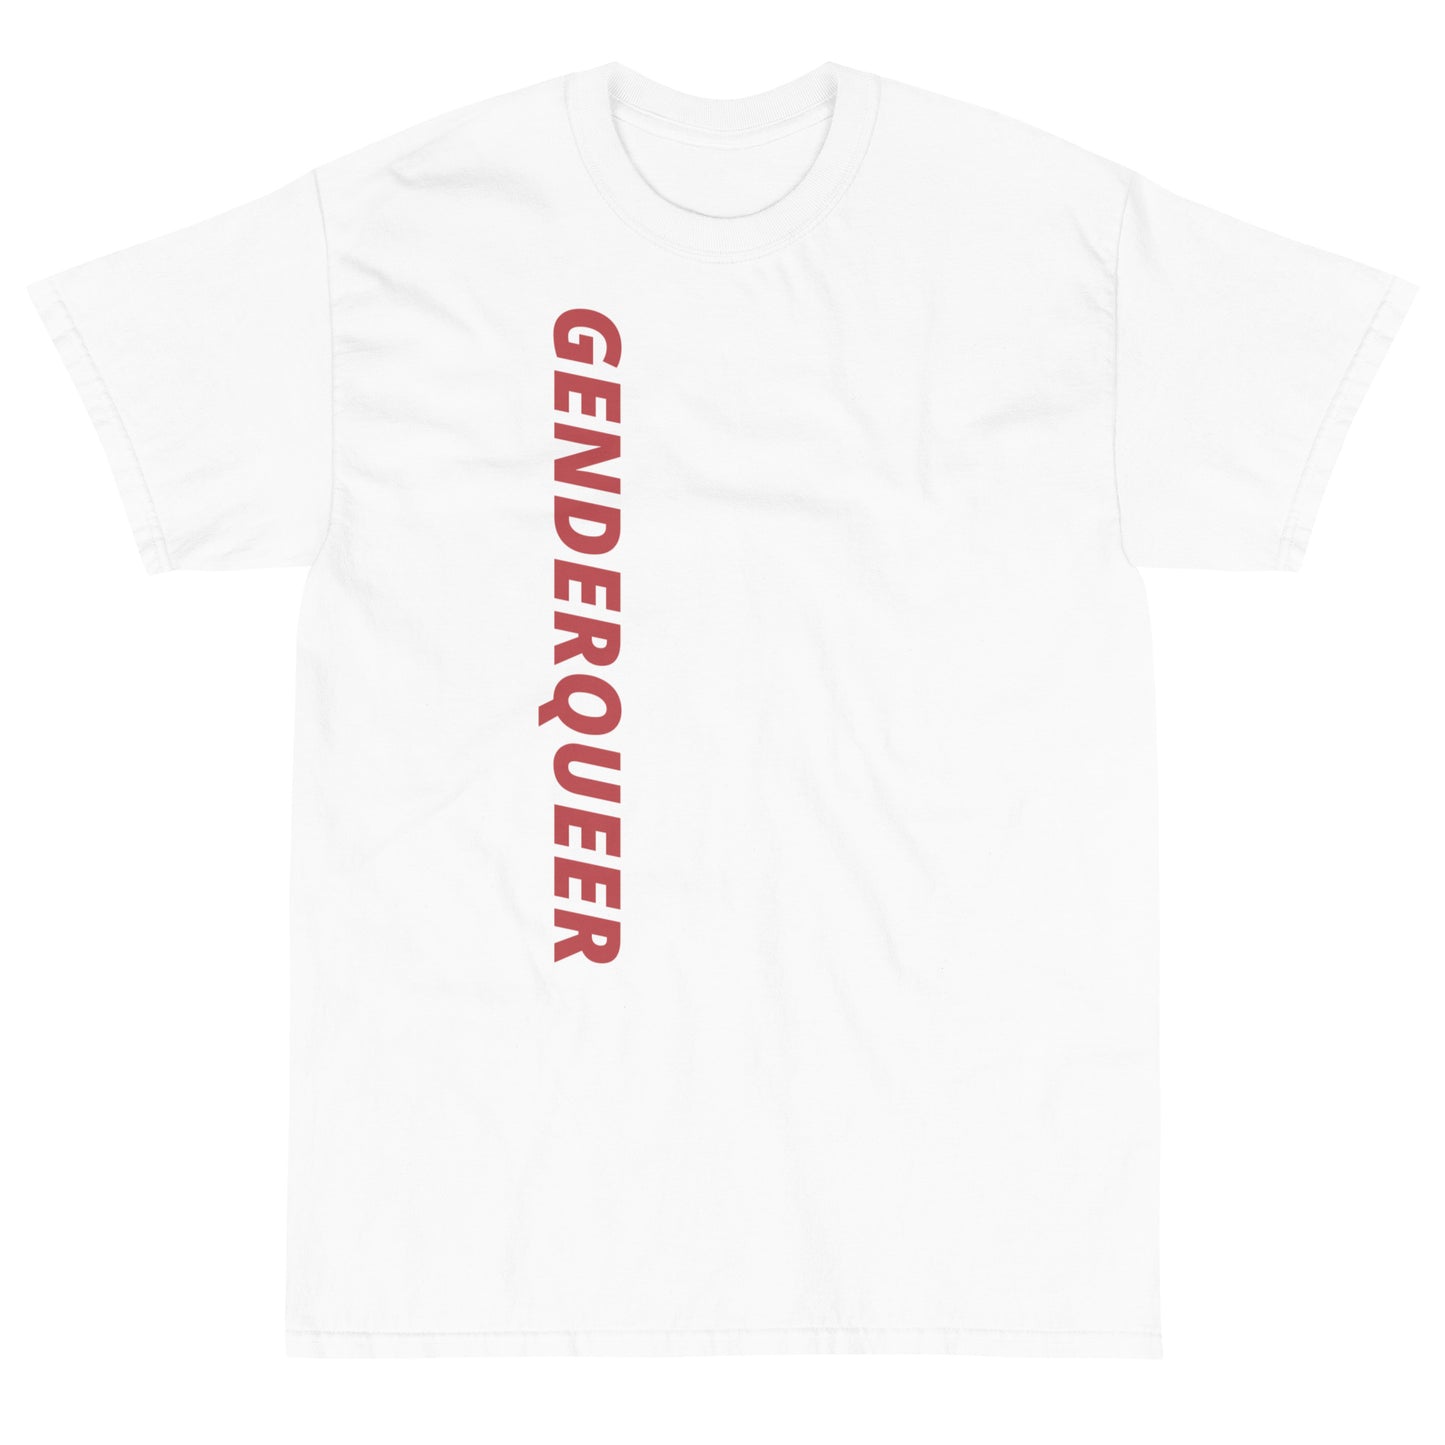 "Genderqueer" Short Sleeve T-Shirt